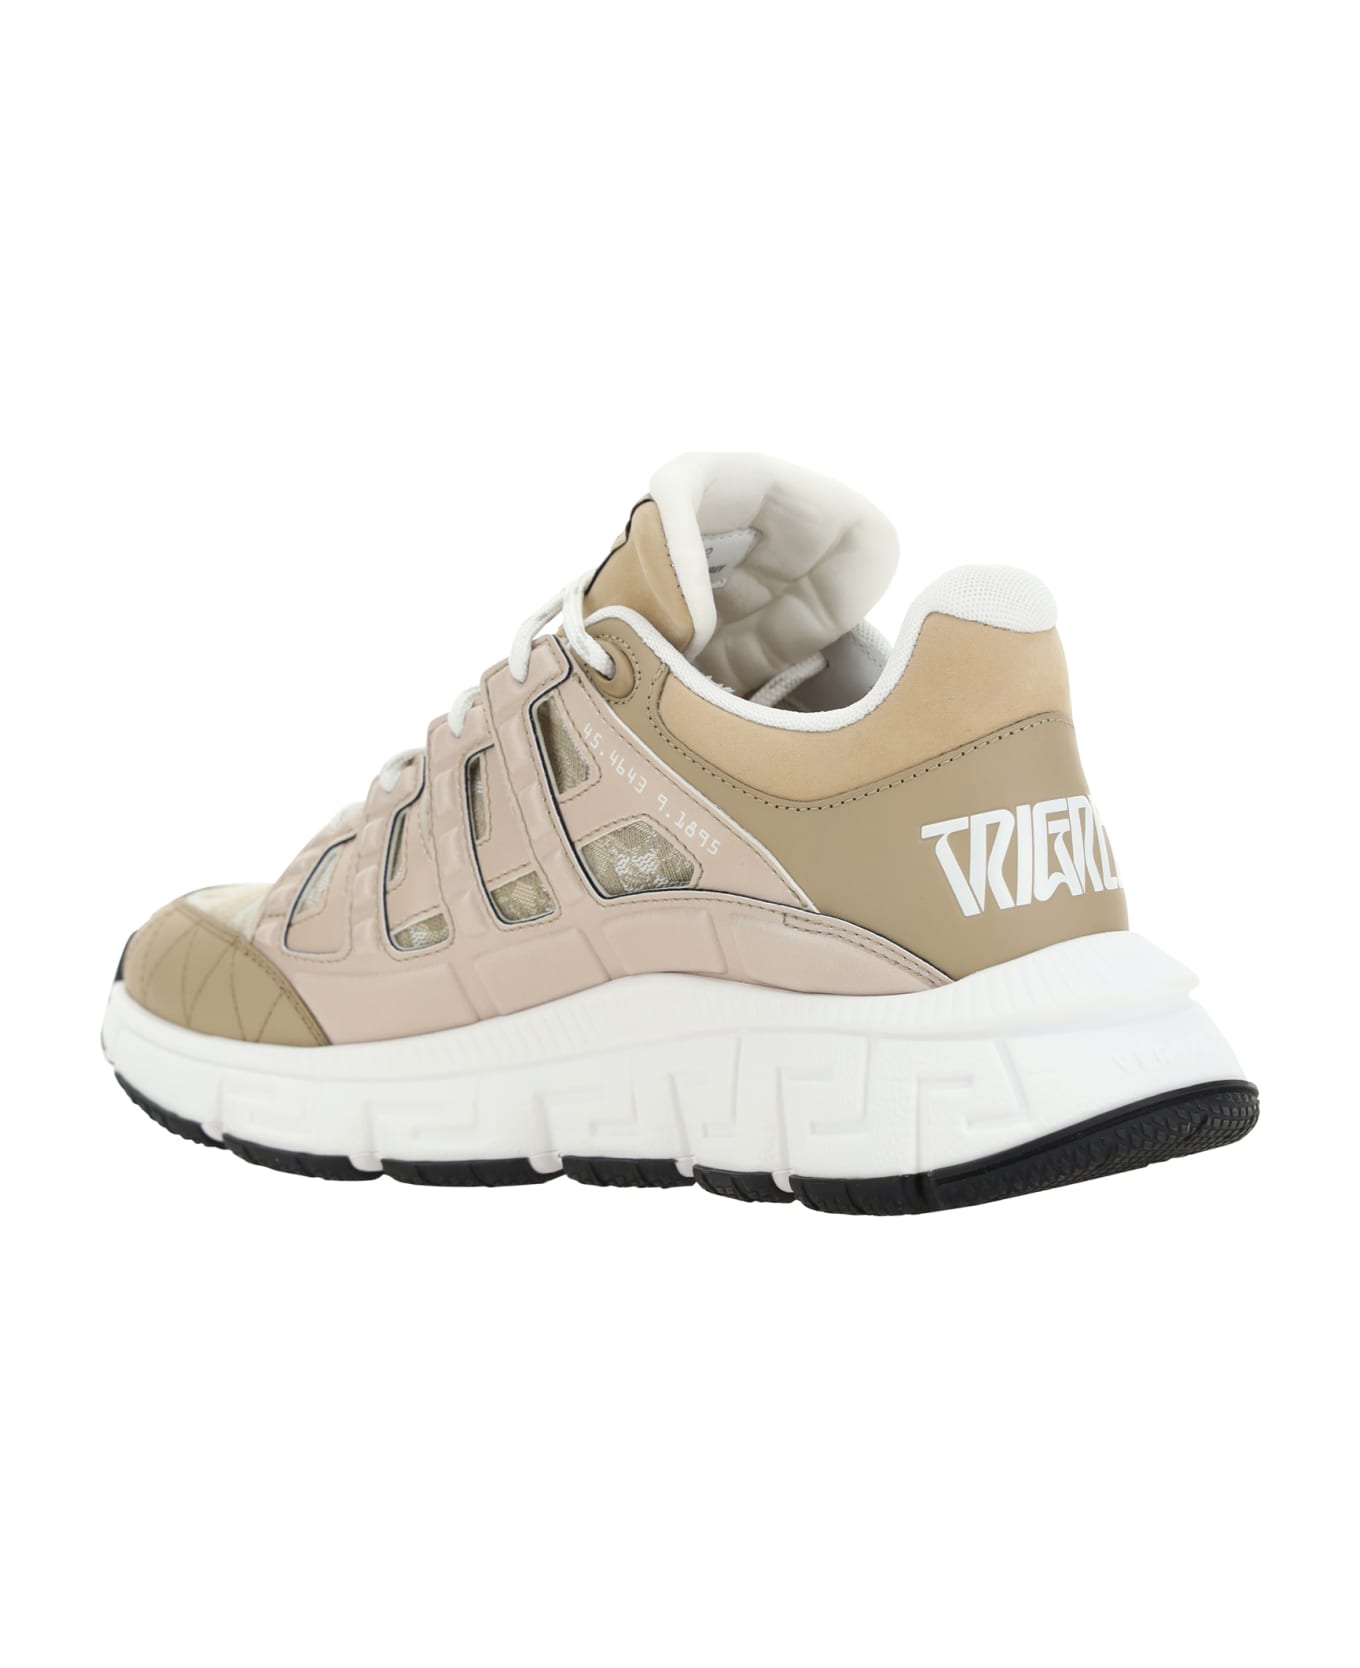 Versace Trigreca Sneakers - Beige/beige